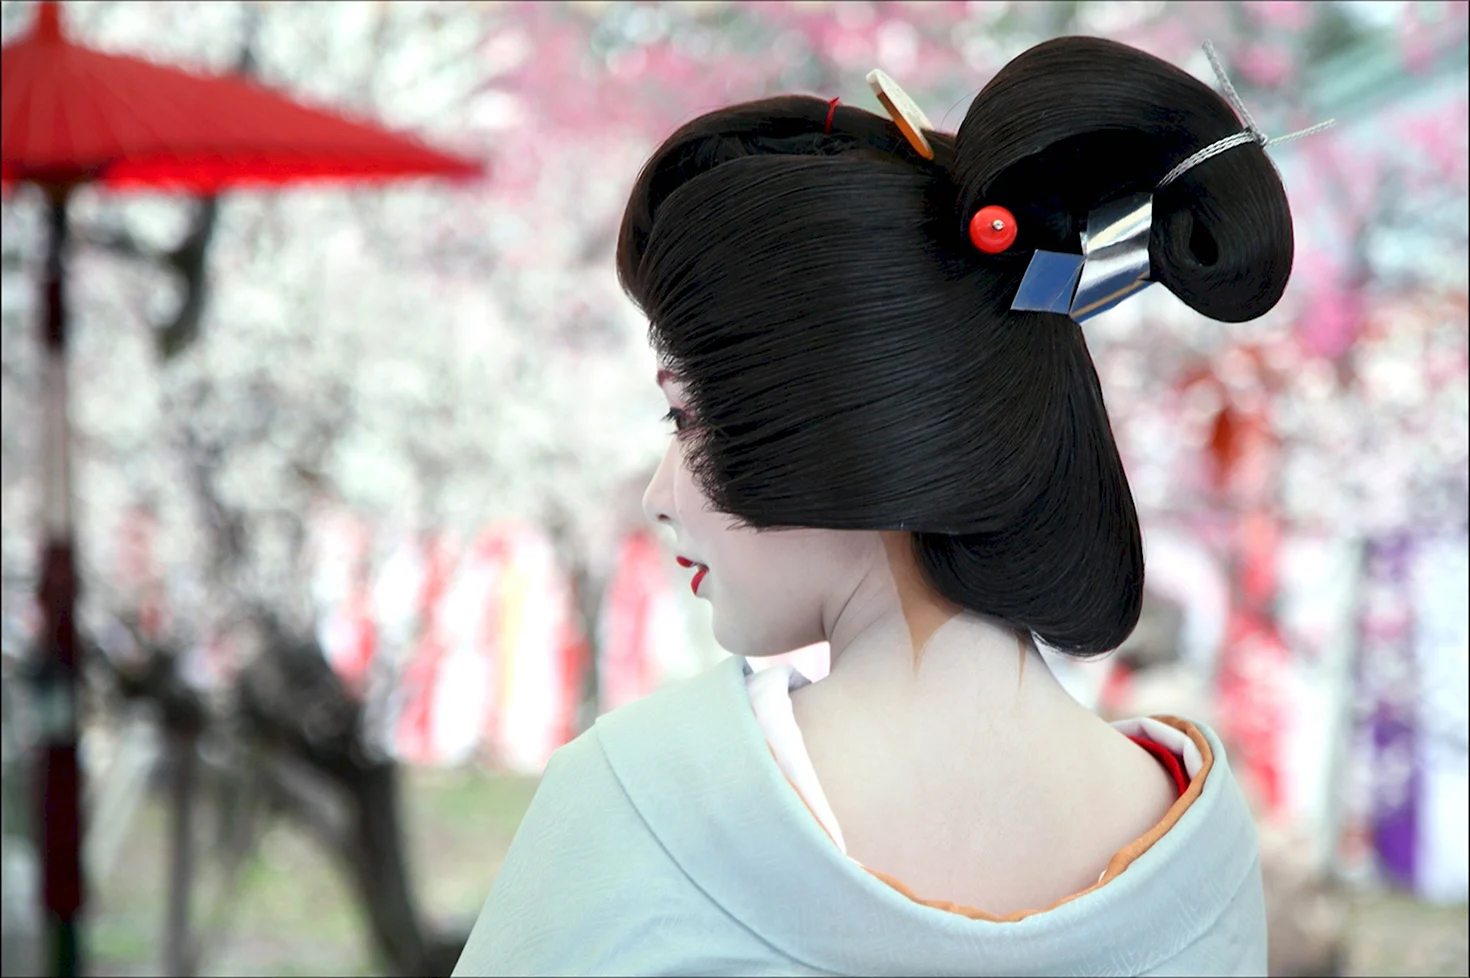 Нихонгами японские традиционные причёски